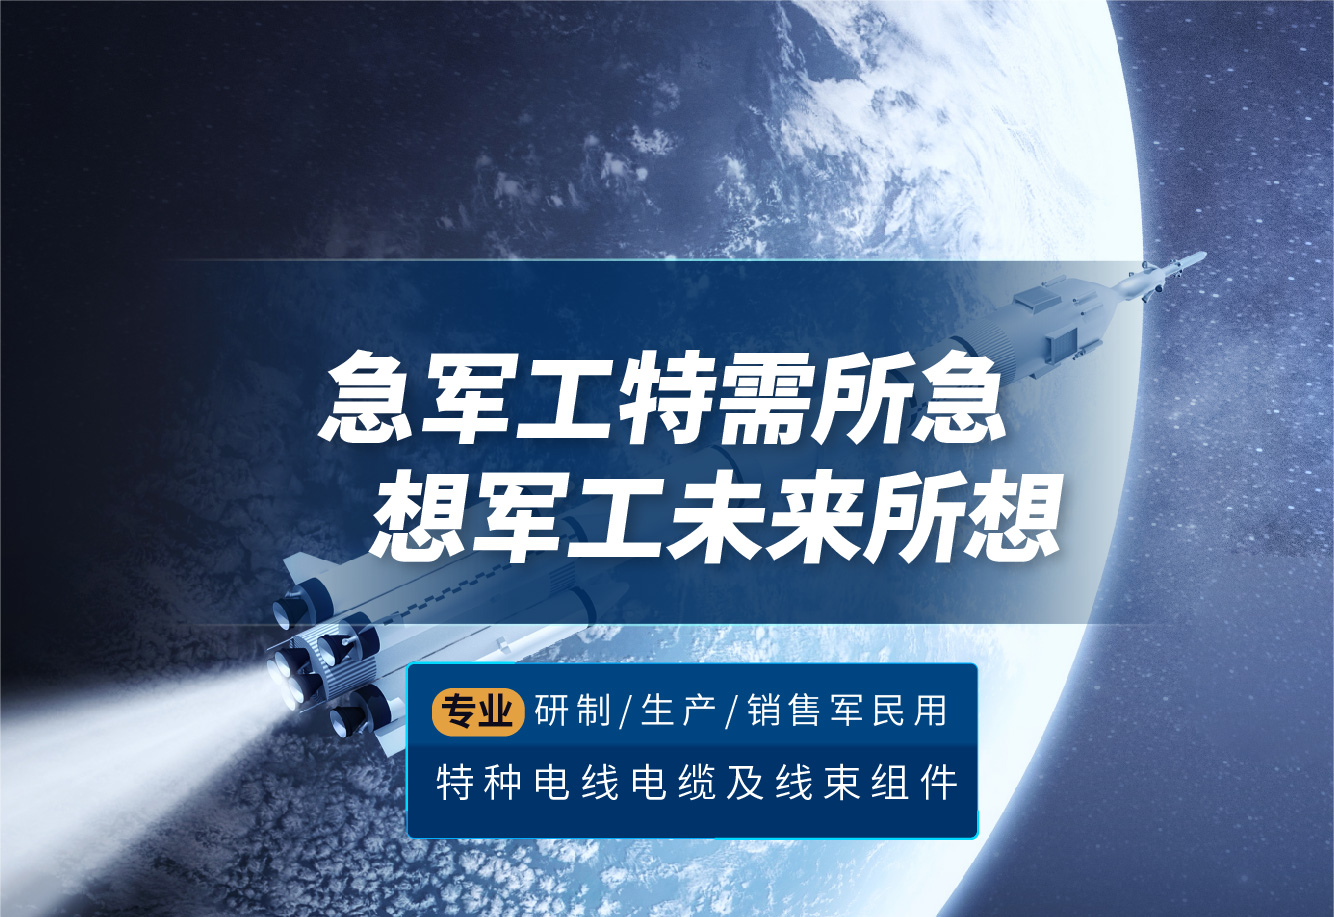 芜湖航天特种电缆厂股份有限公司